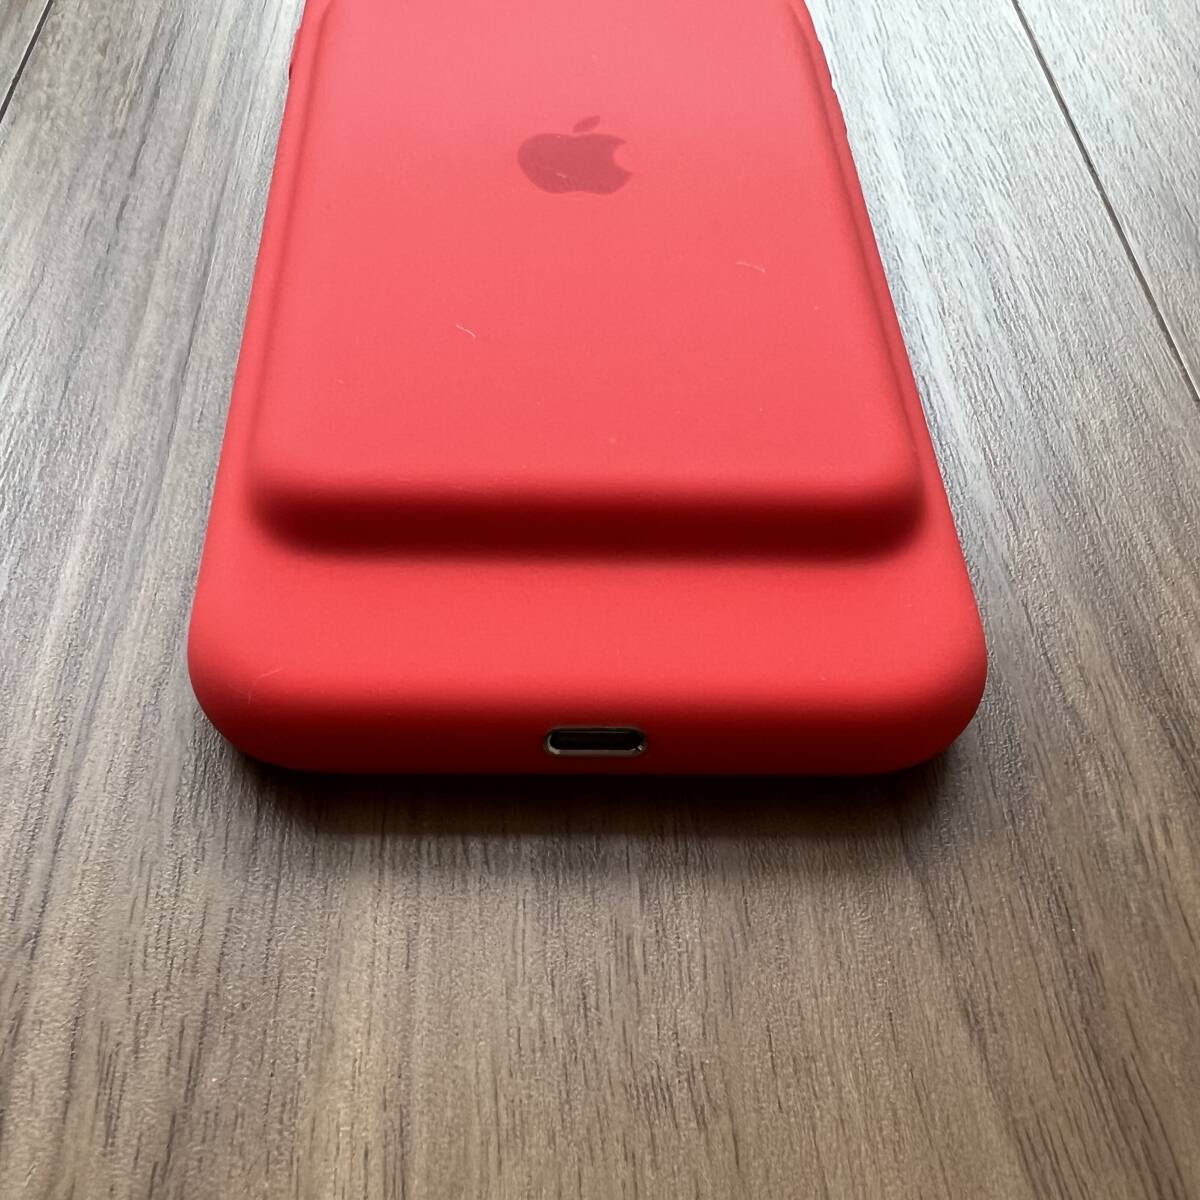 【未使用・交換品】iPhone 7 Smart Battery Case - (PRODUCT)RED iPhone 7 スマートバッテリーケース